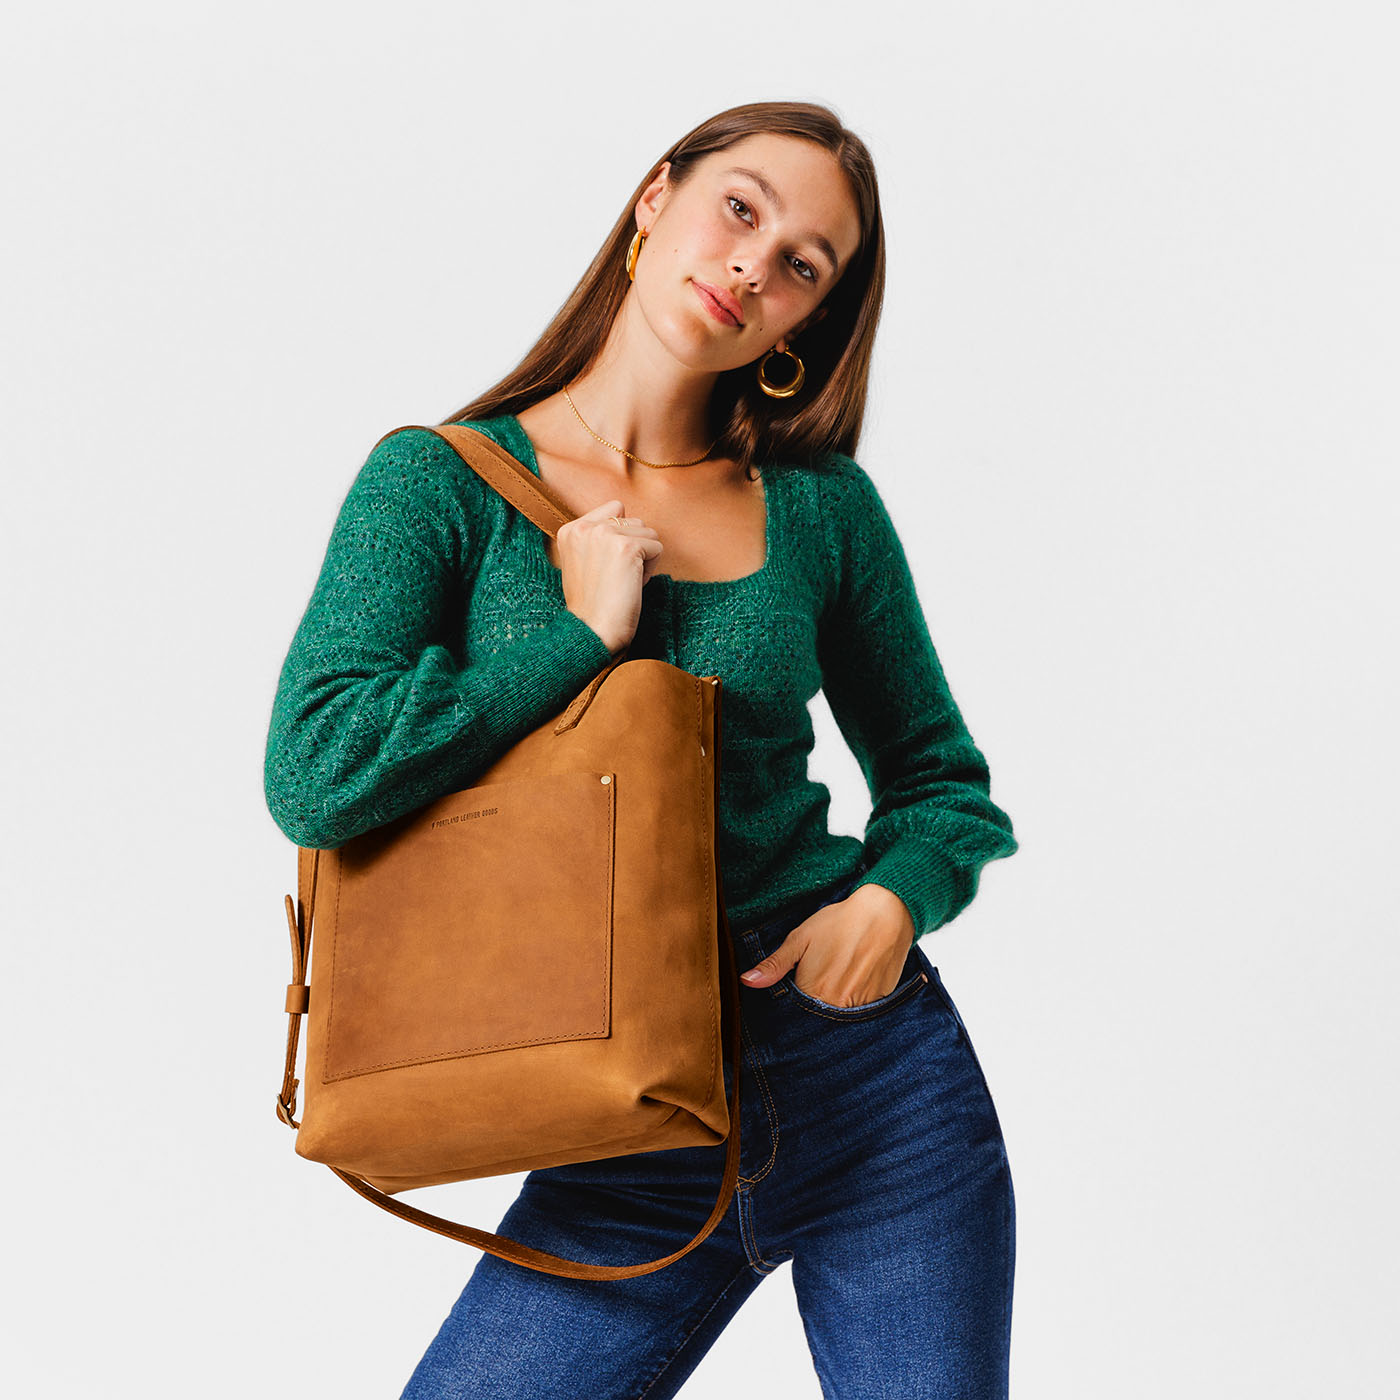 Vintage Baguette Bag Fashionable Crossbody Shoulder Bag For Women